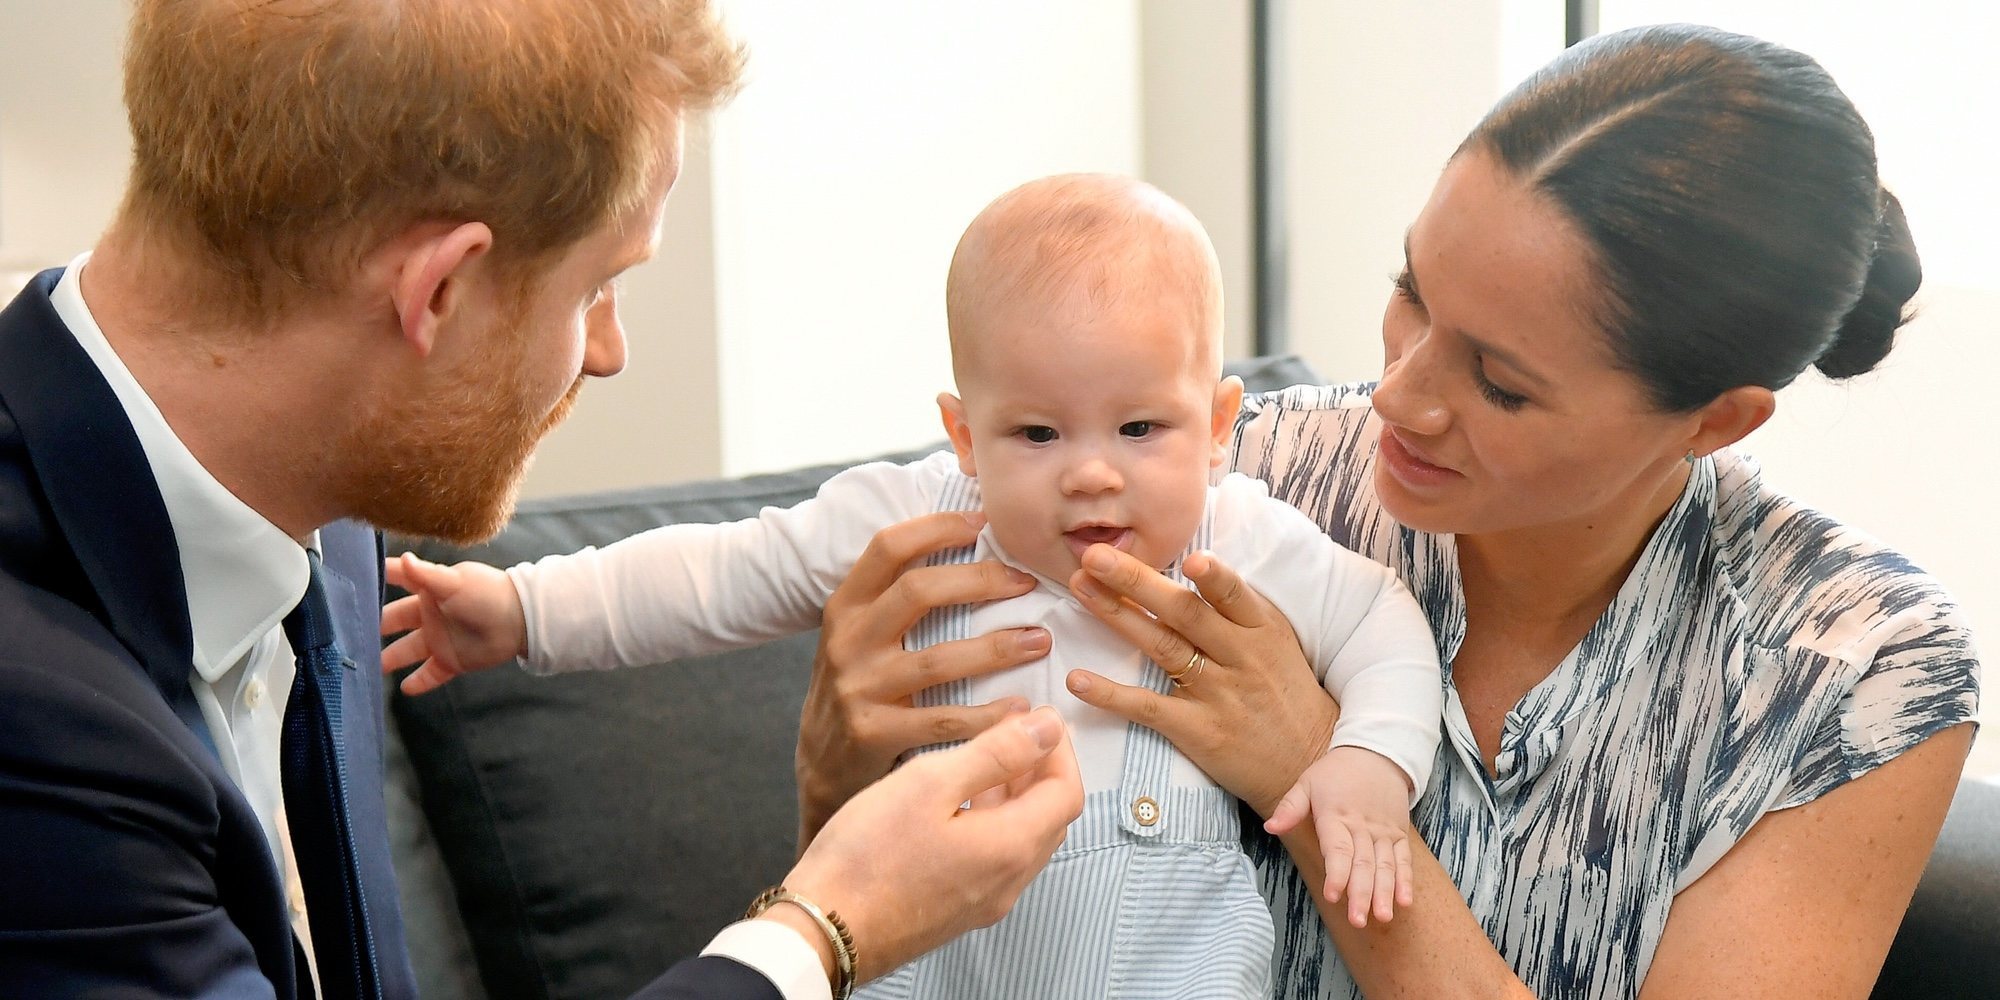 El Príncipe Harry y Meghan Markle revelan un importante detalle sobre su hijo Archie Harrison